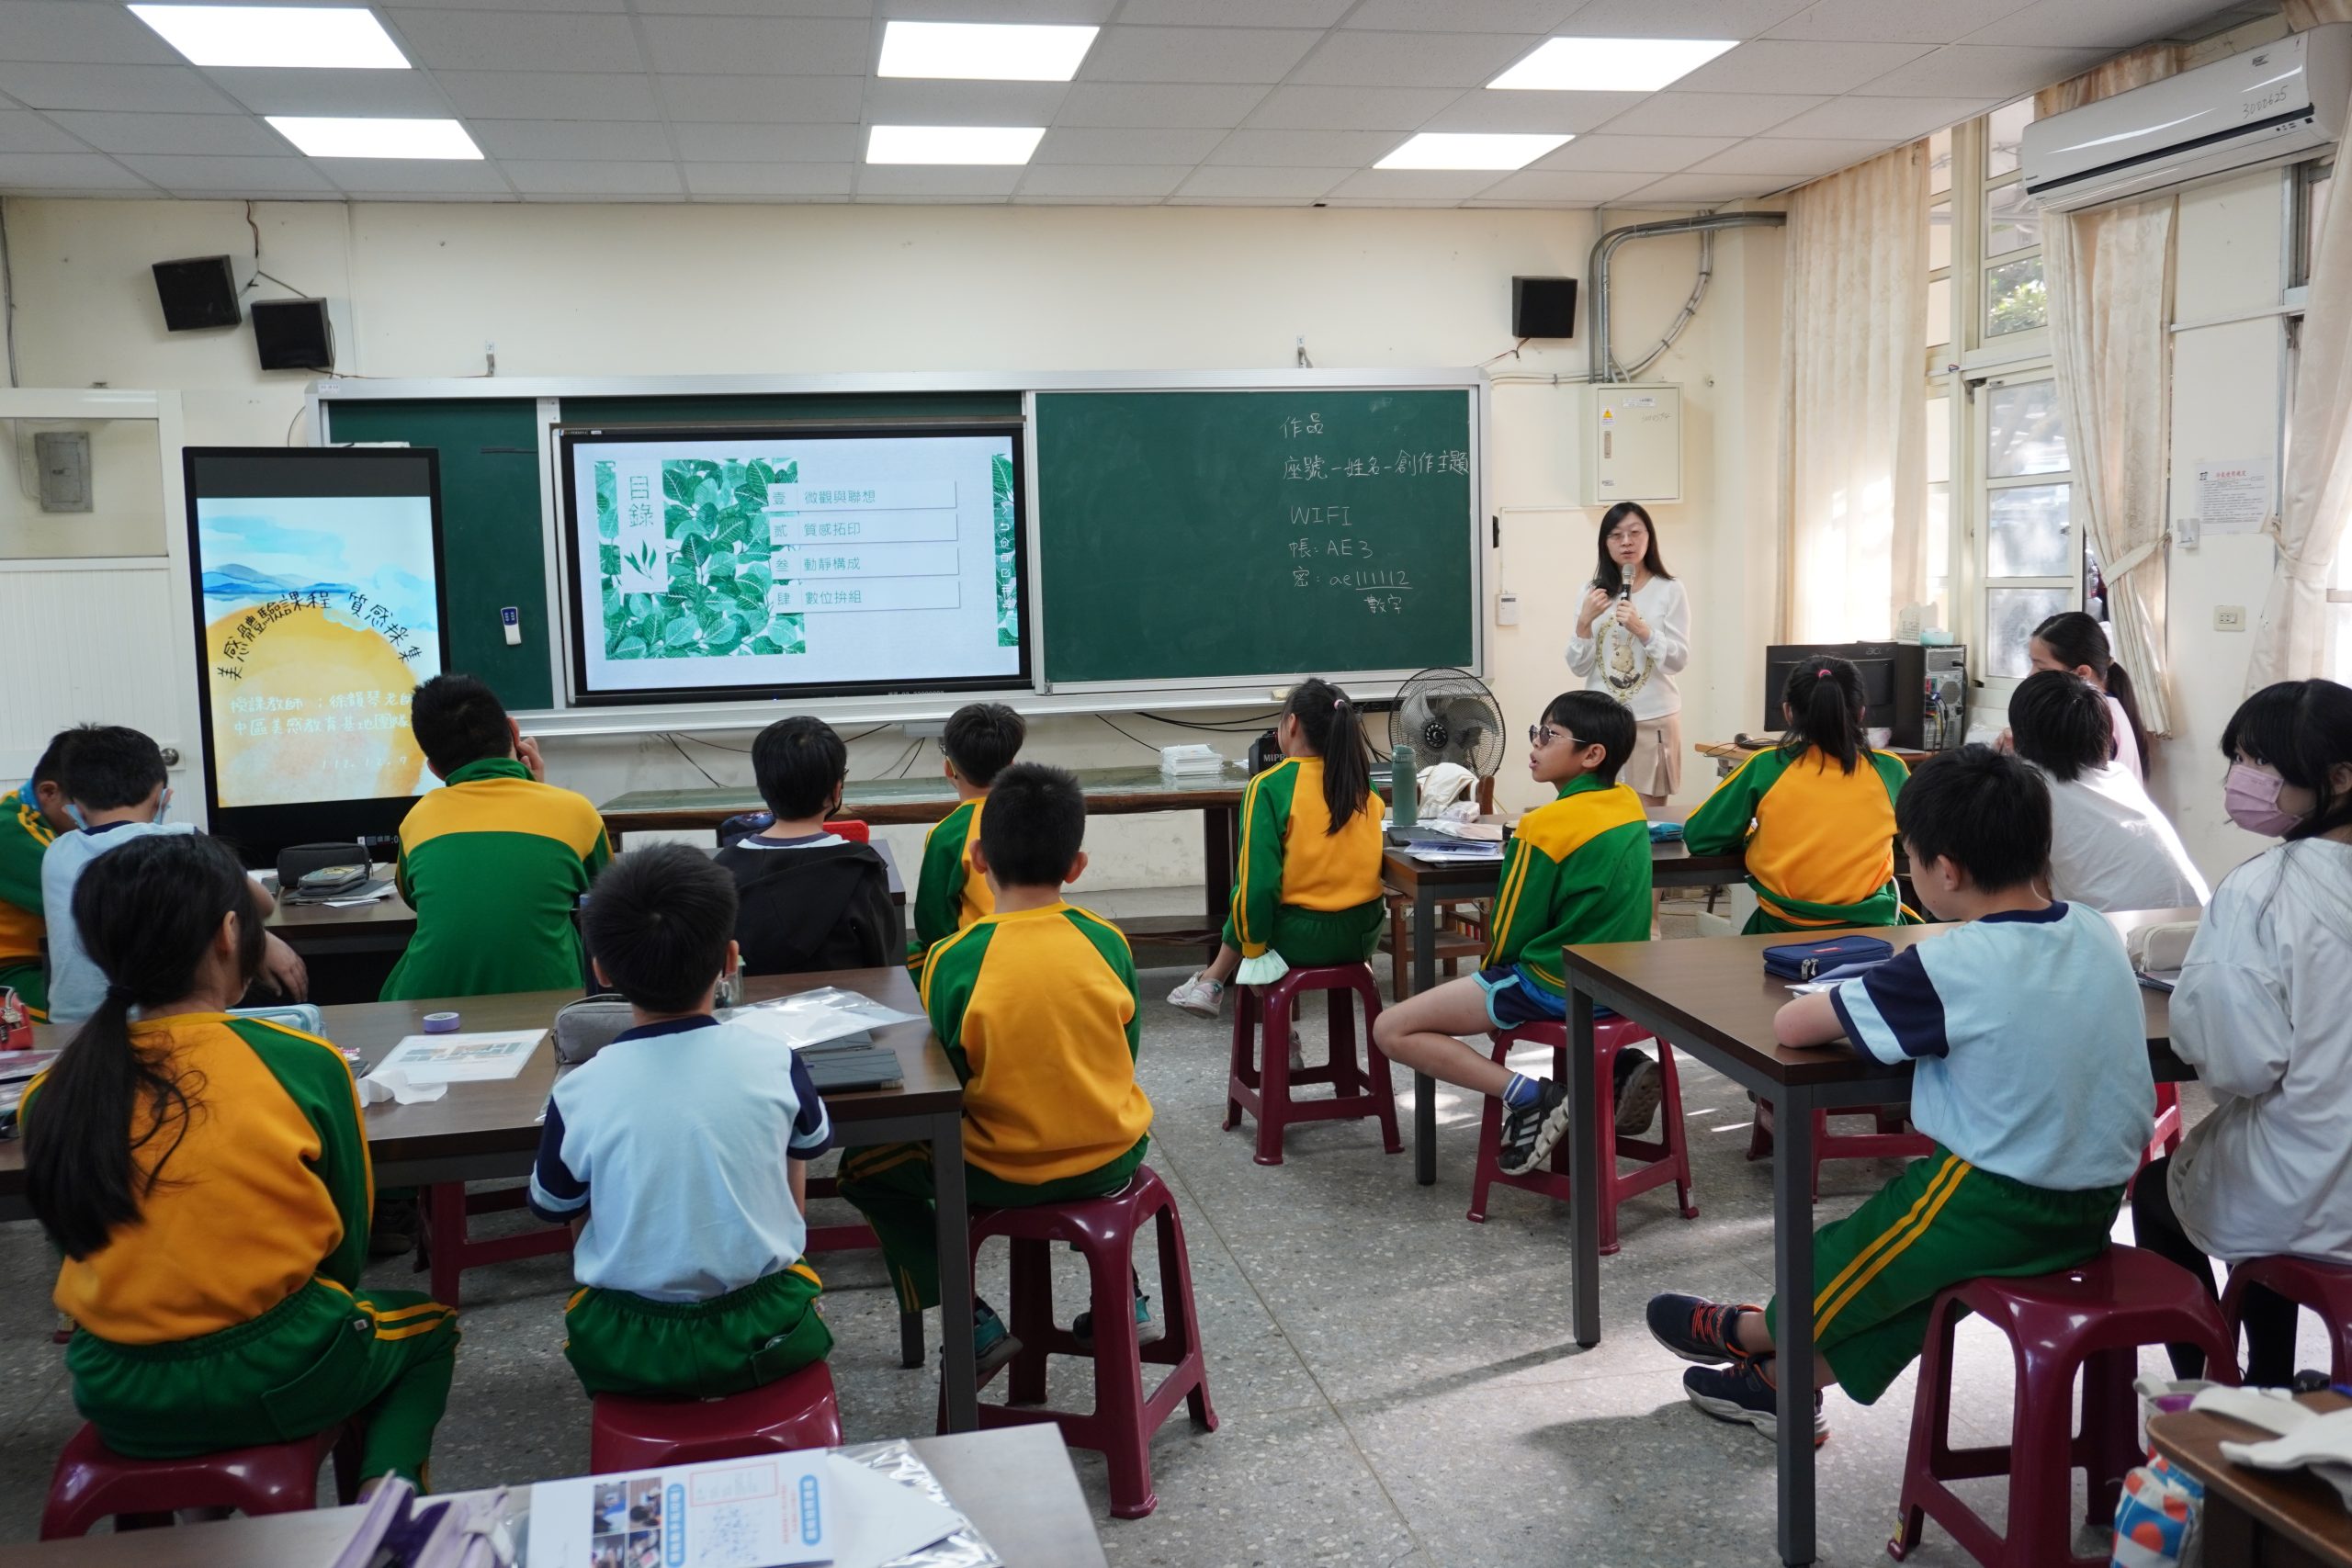 112學年度第一學期於臺中市烏日區喀哩國民小學施辦質感採集課程實作紀錄系列照片共20張